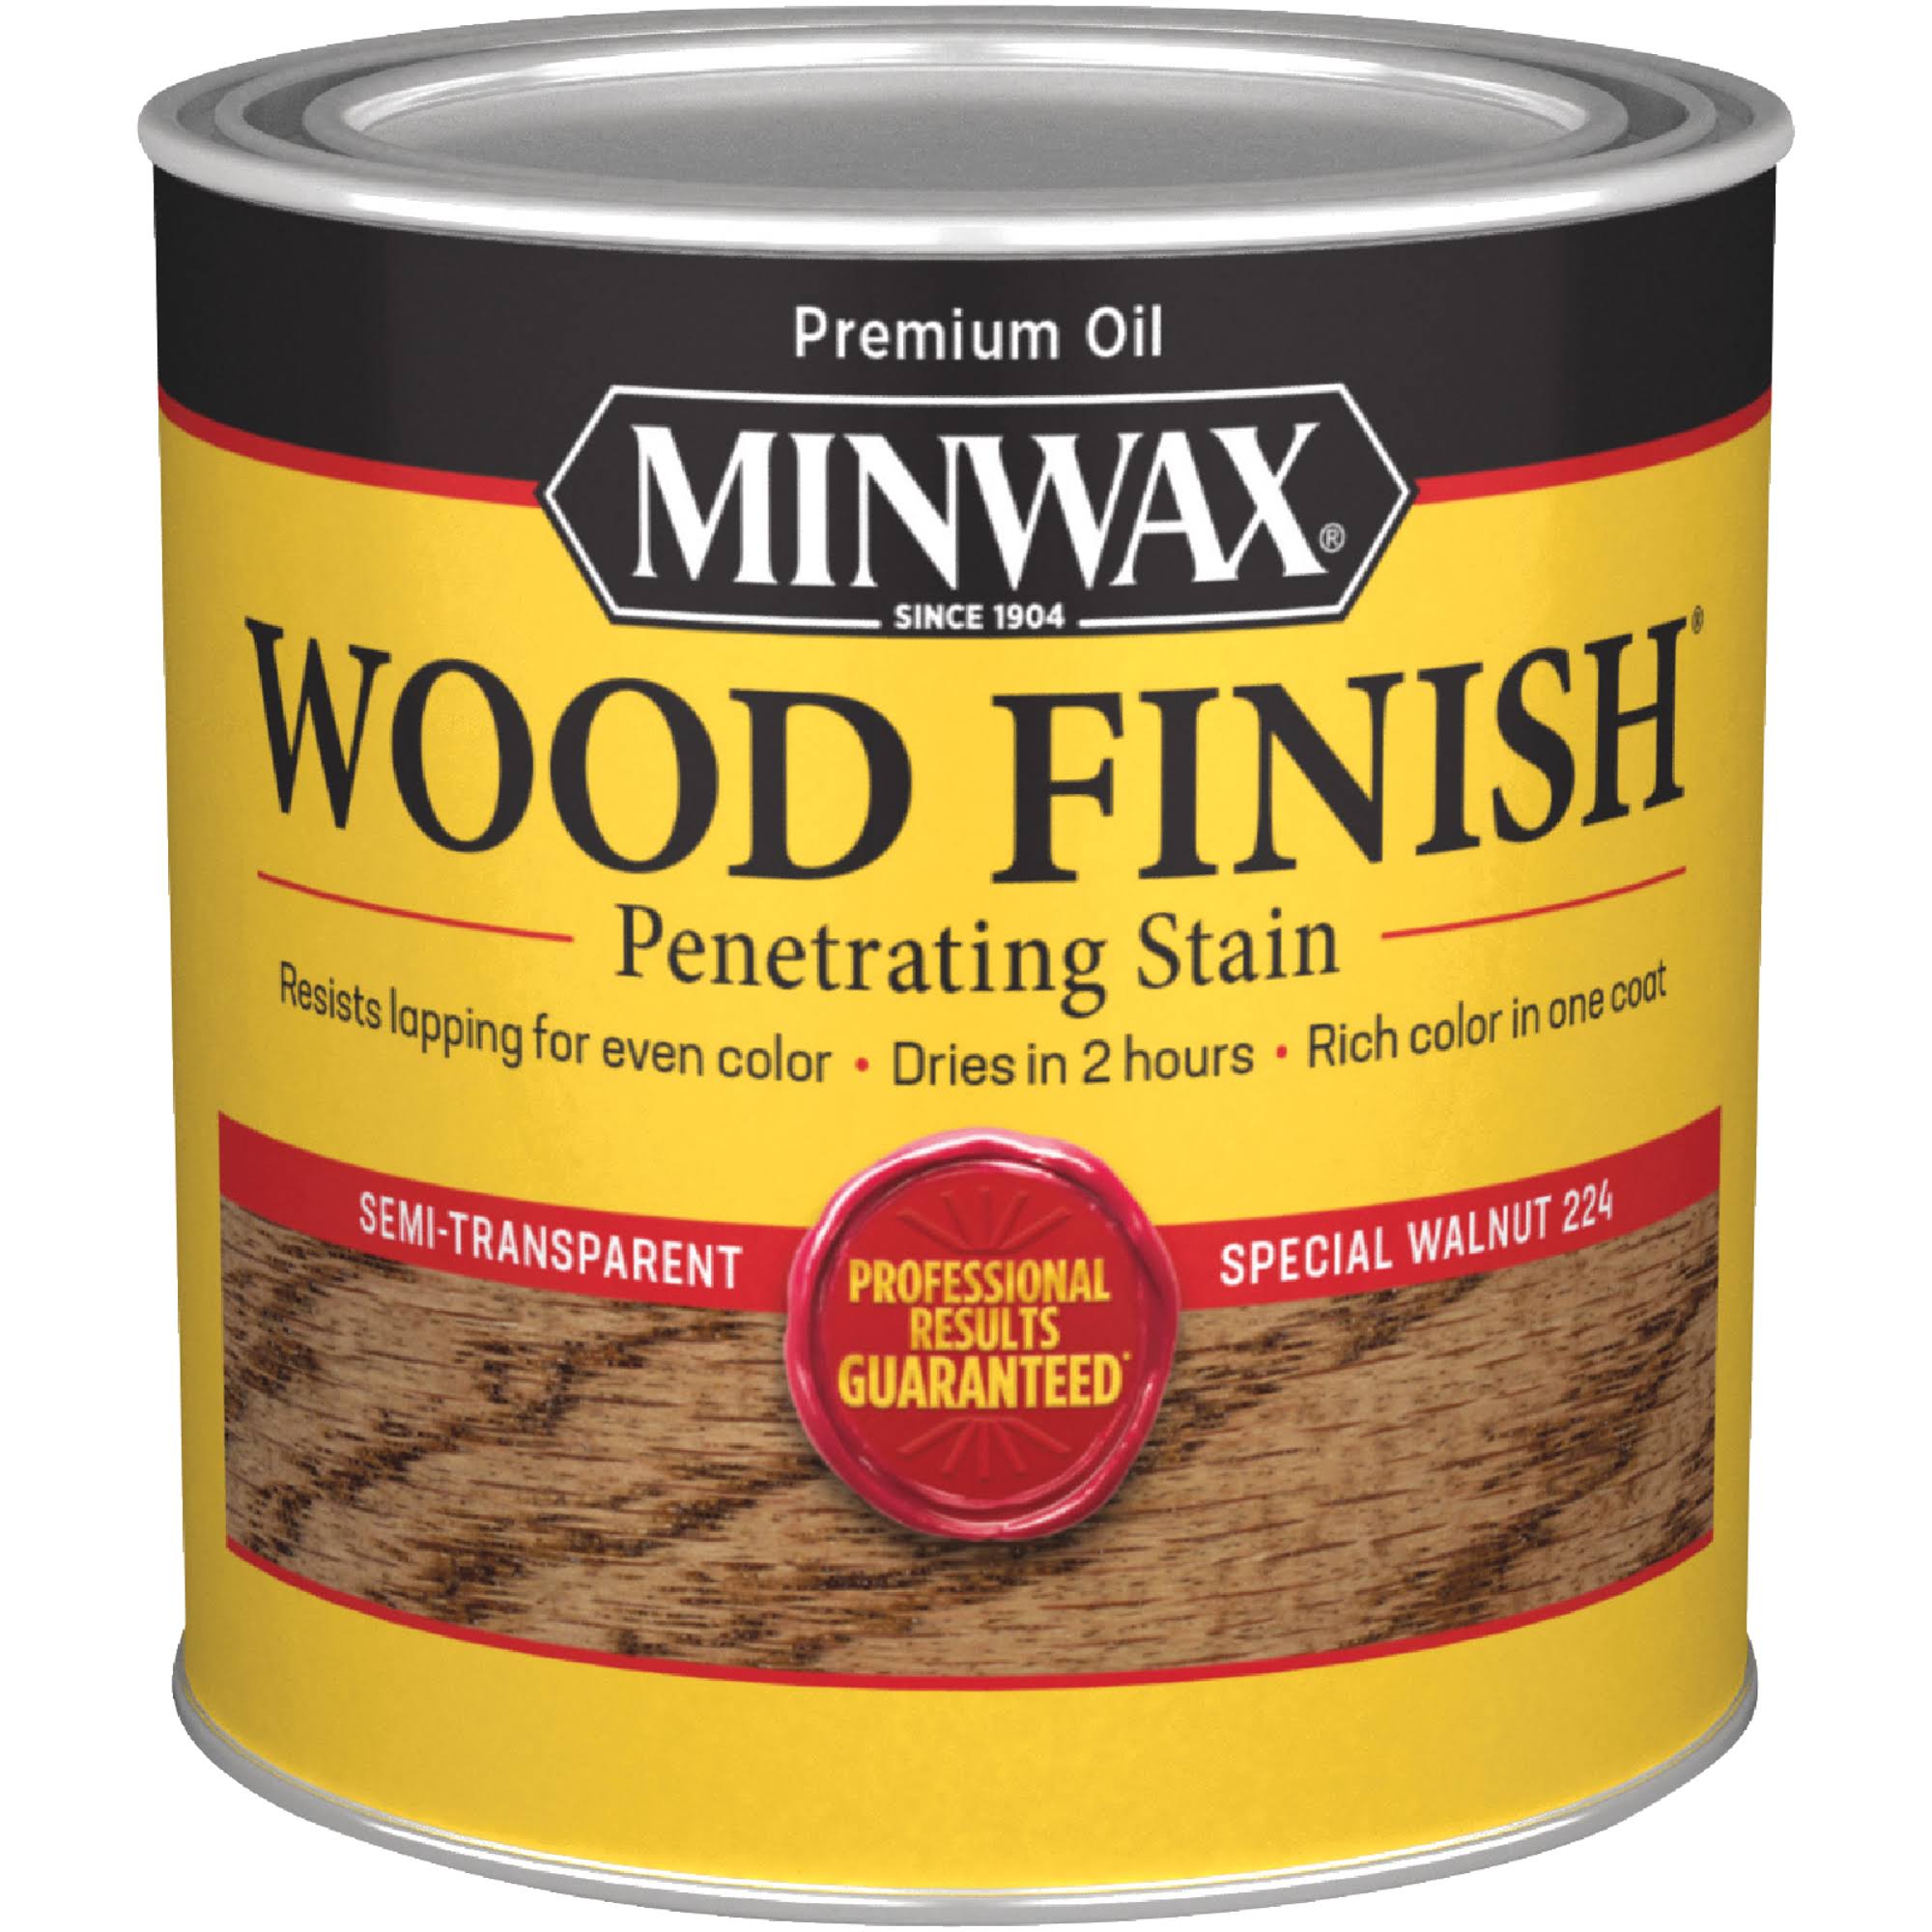 Minwax Wood Finish - 224 Special Walnut